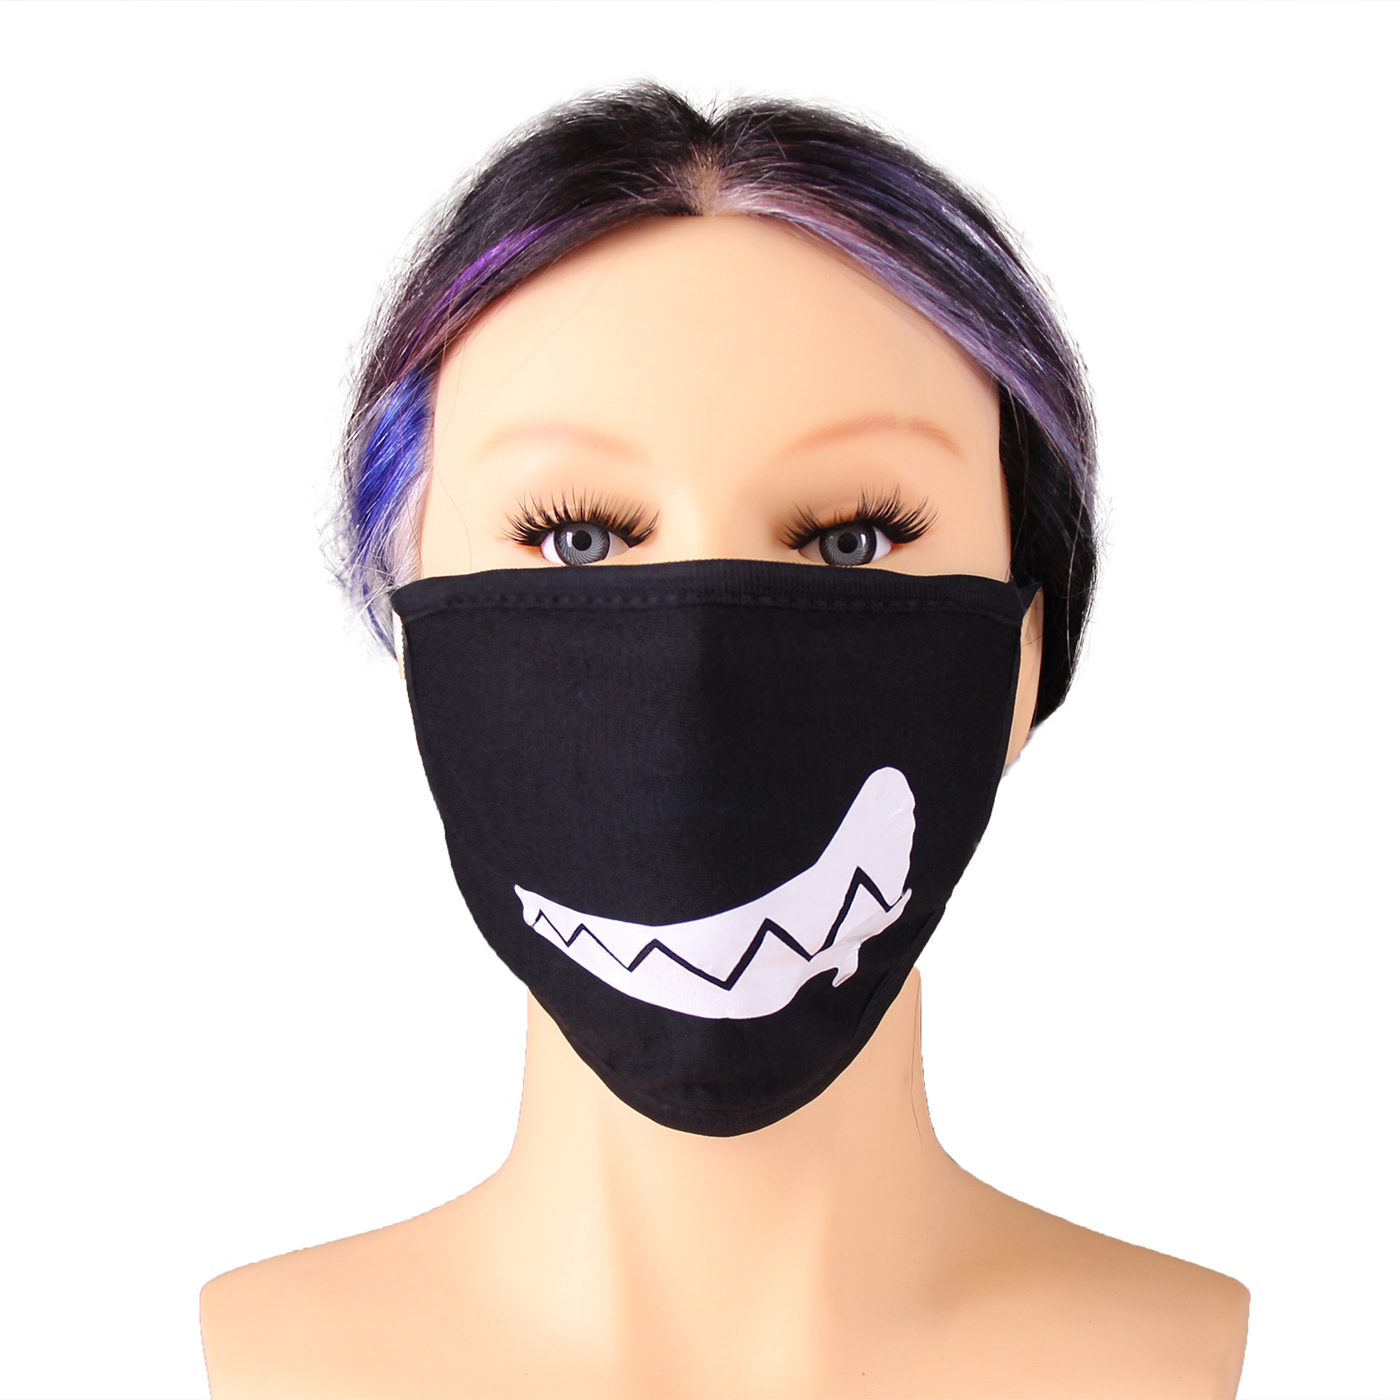 Цена 1 маски. Маска повязка. Тканевые маски для лица.